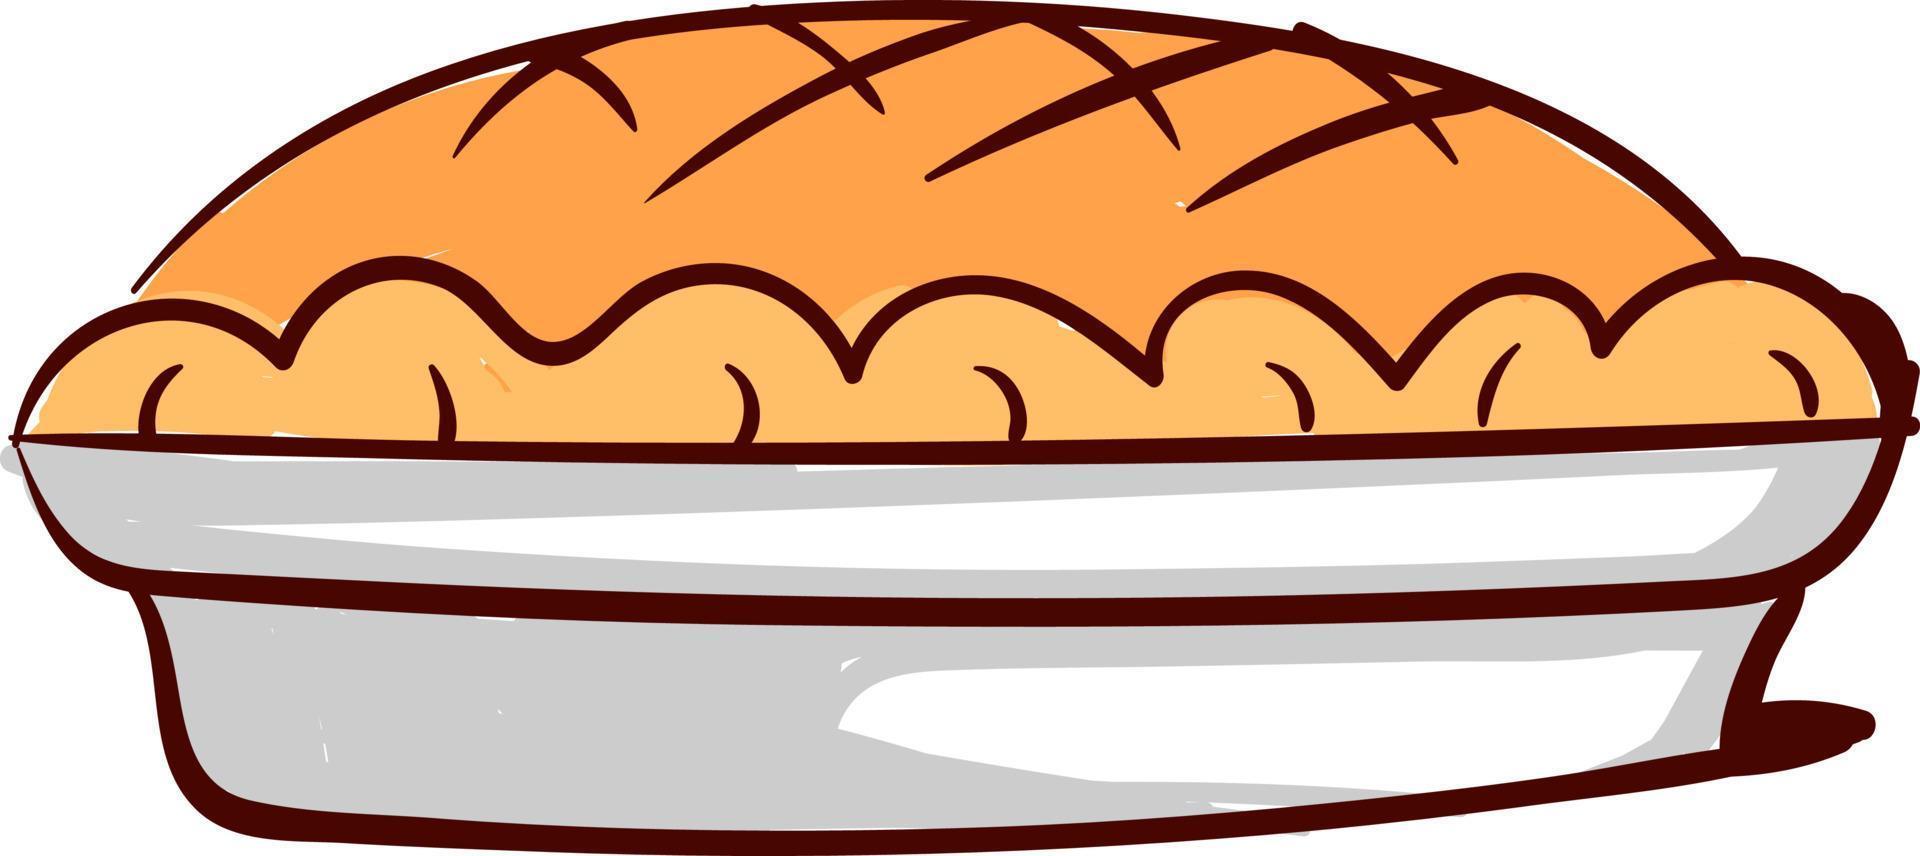 Mela torta, illustrazione, vettore su bianca sfondo